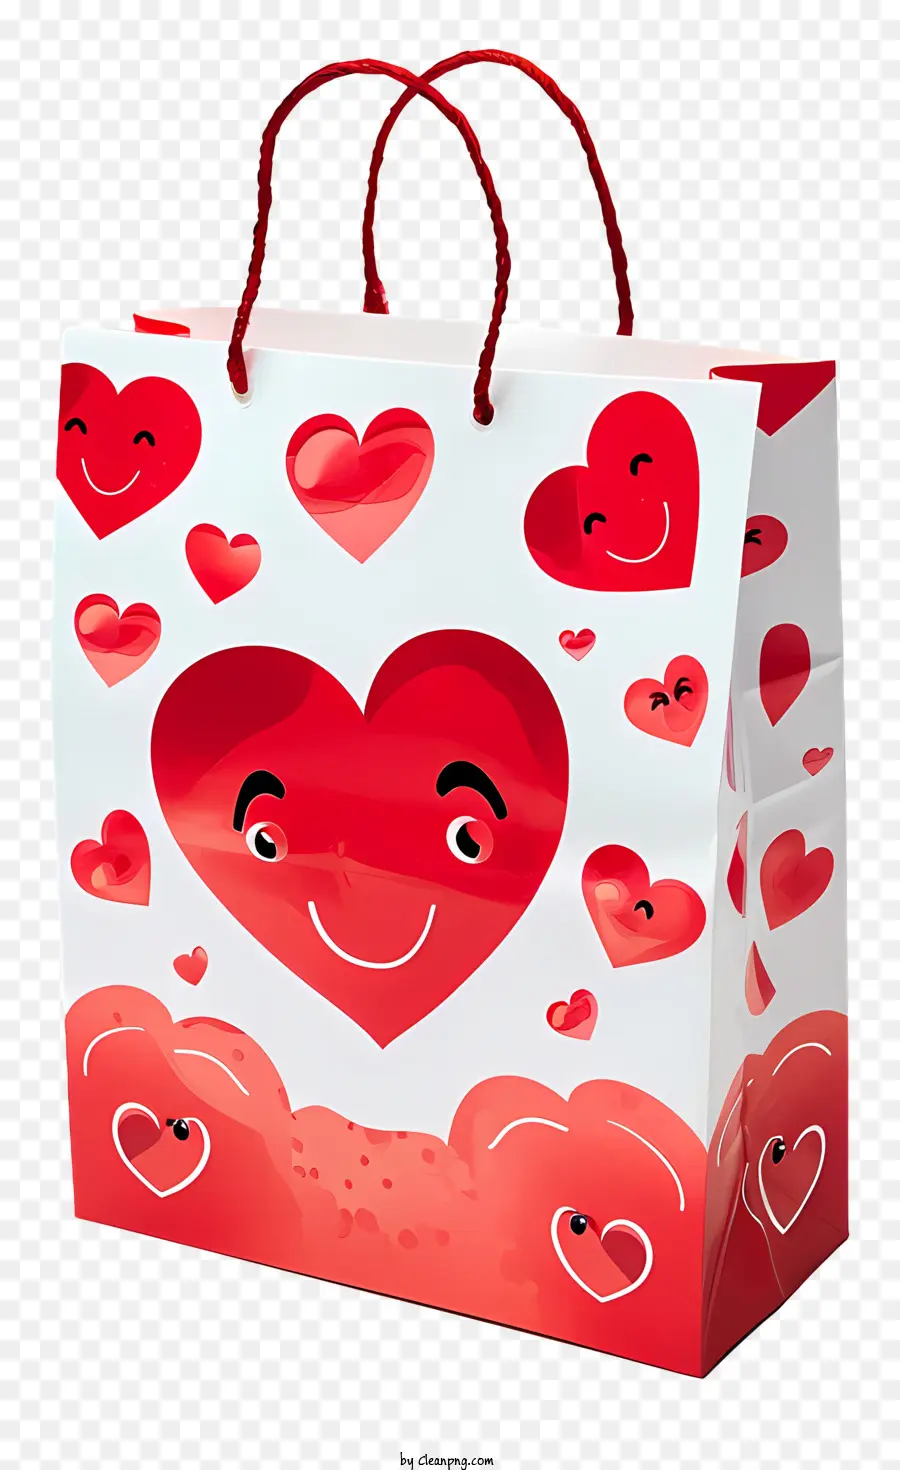 Chúc mừng Ngày Valentine - Chúc mừng ngày lễ tình nhân túi mua sắm màu đỏ với trái tim